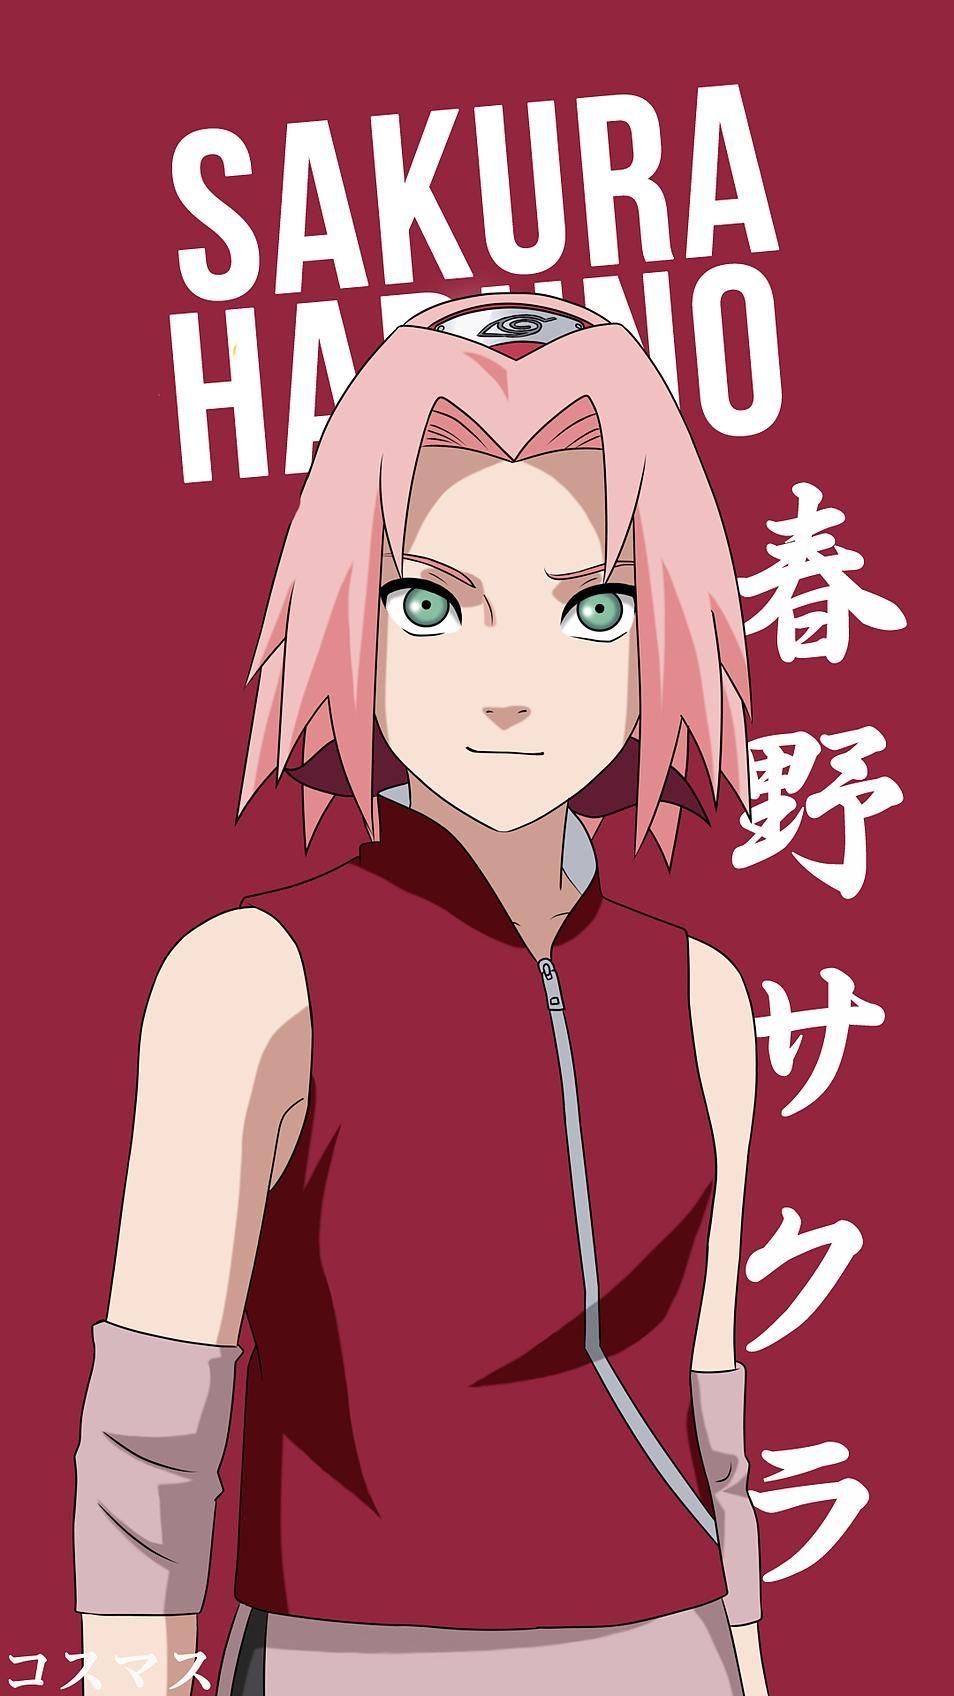 Sakura Haruno Korigengi. Wallpaper Anime. Naruto shippuden anime, Sakura haruno, Anime naruto